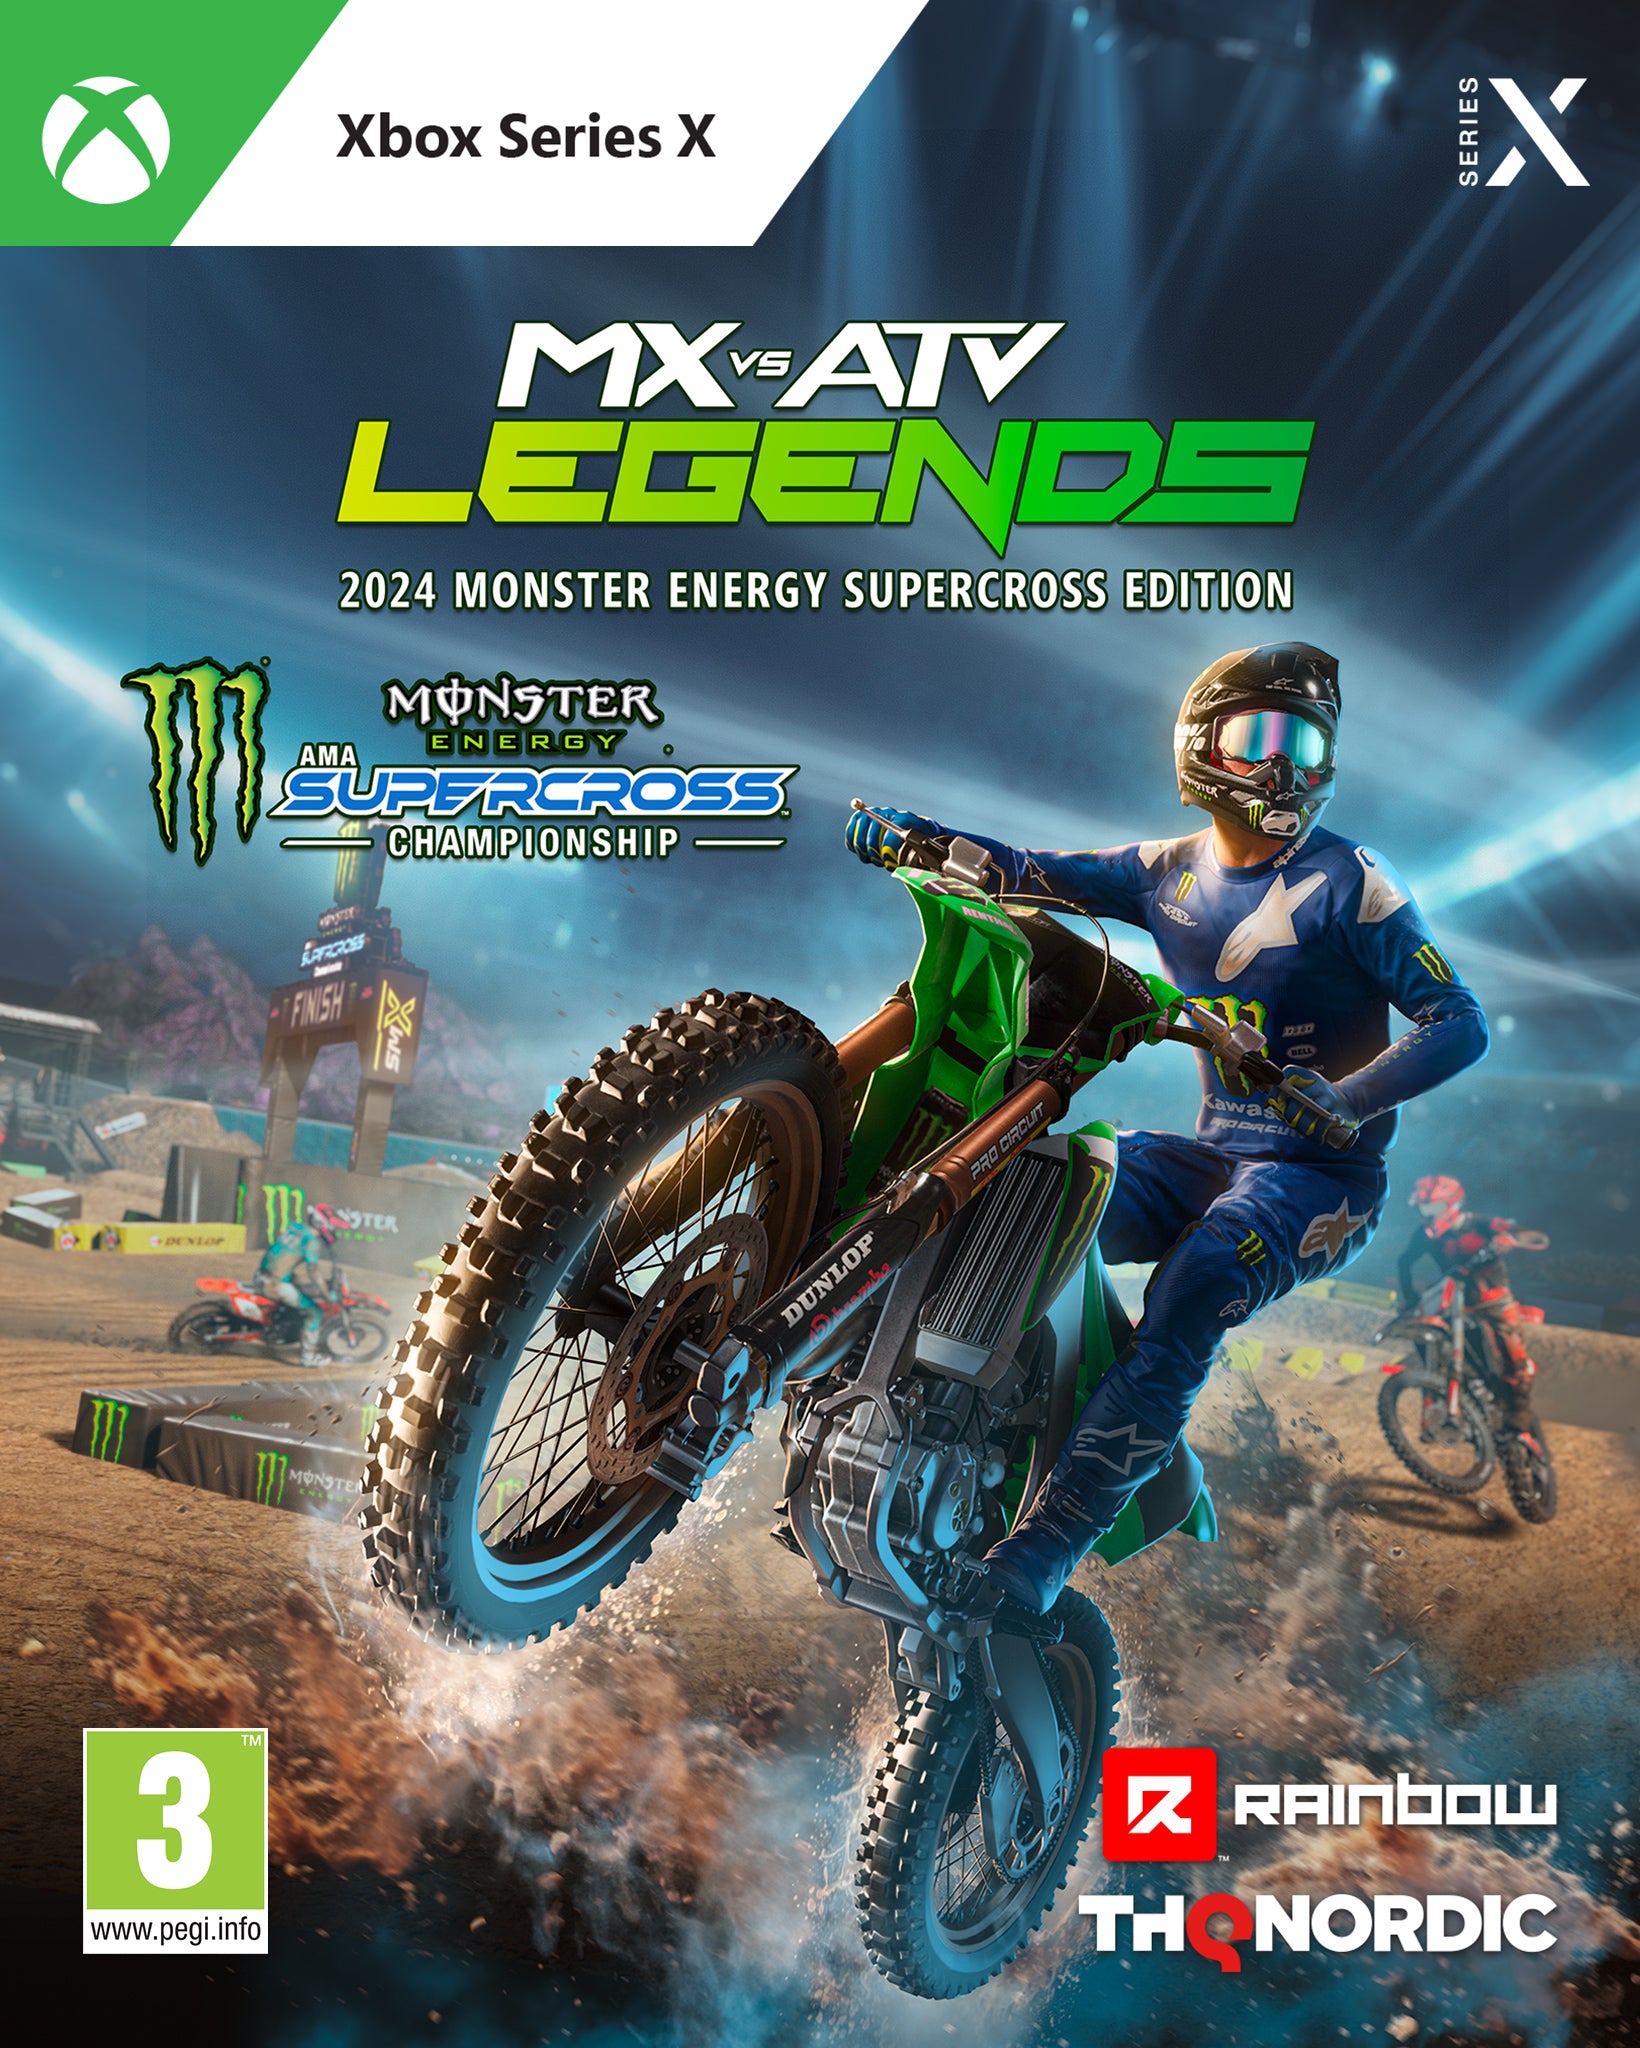 Xbox Series X MX vs ATV Legends 2024 Monster Energy Supercross Edition - Disponibile in 2/3 giorni lavorativi